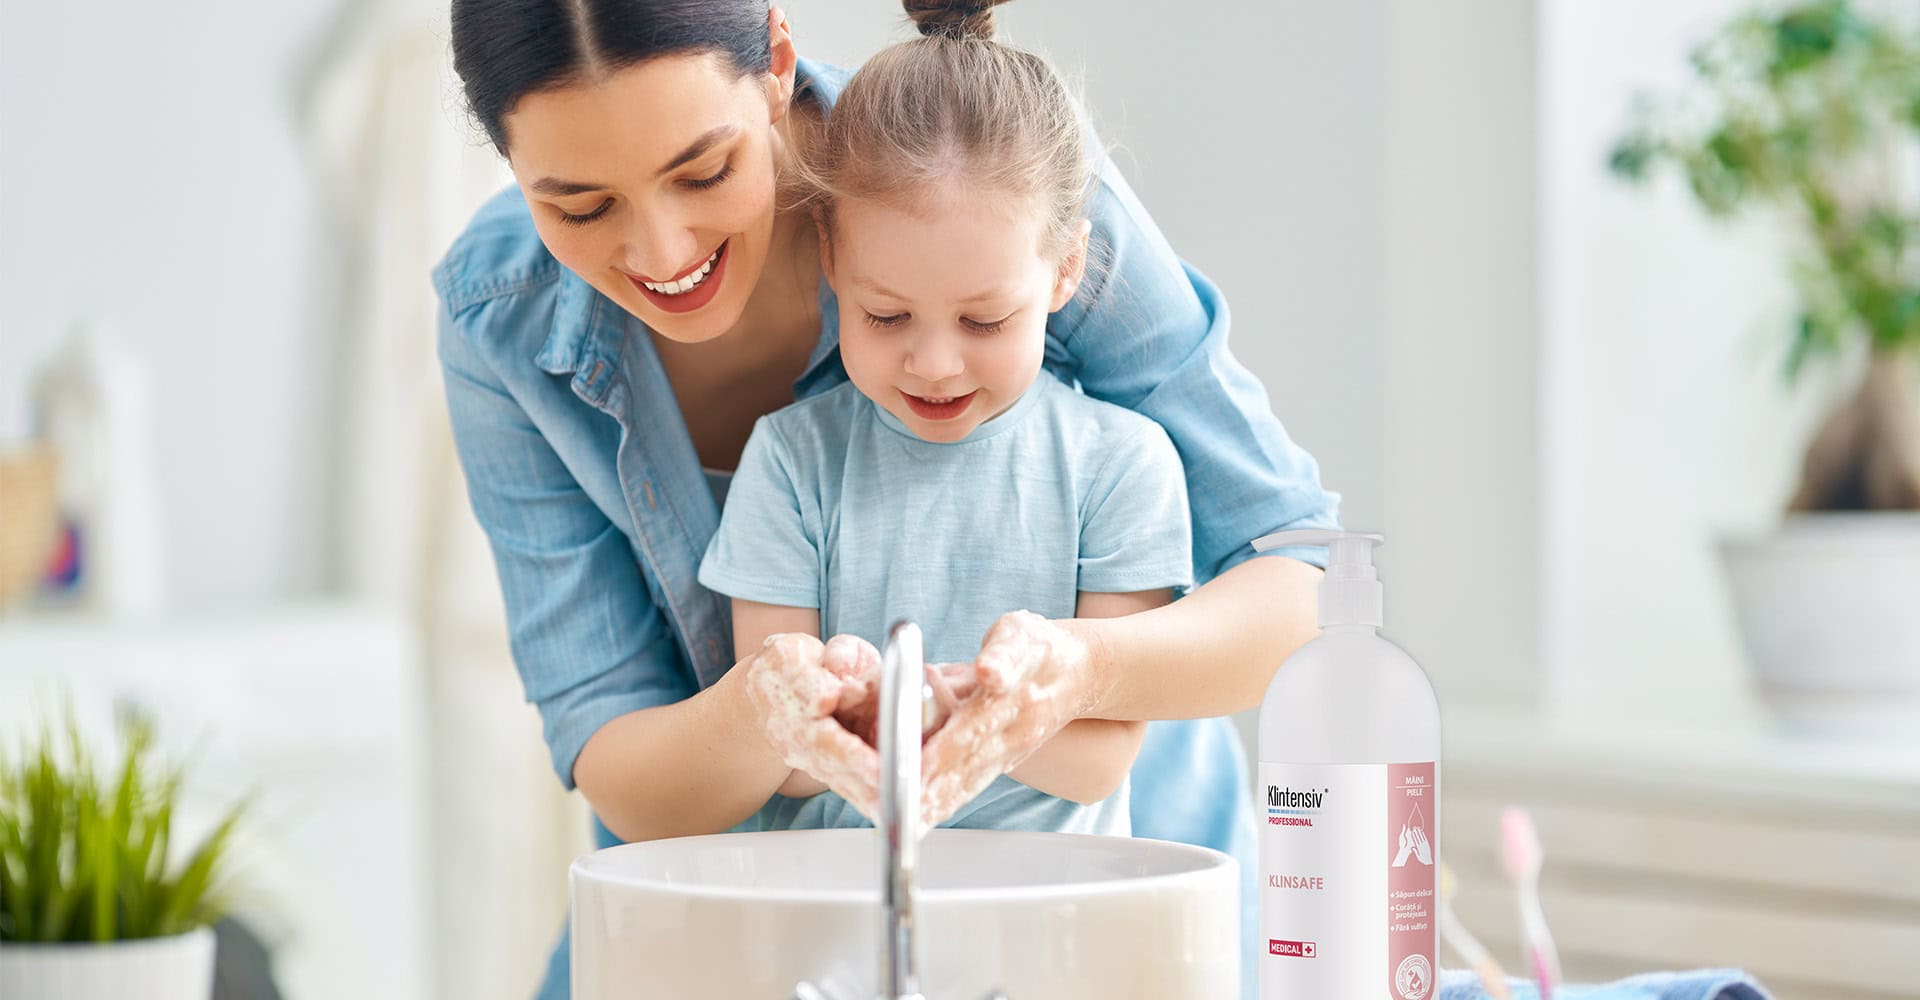 curățarea covoarelor - Importanța igienei personale pentru copii